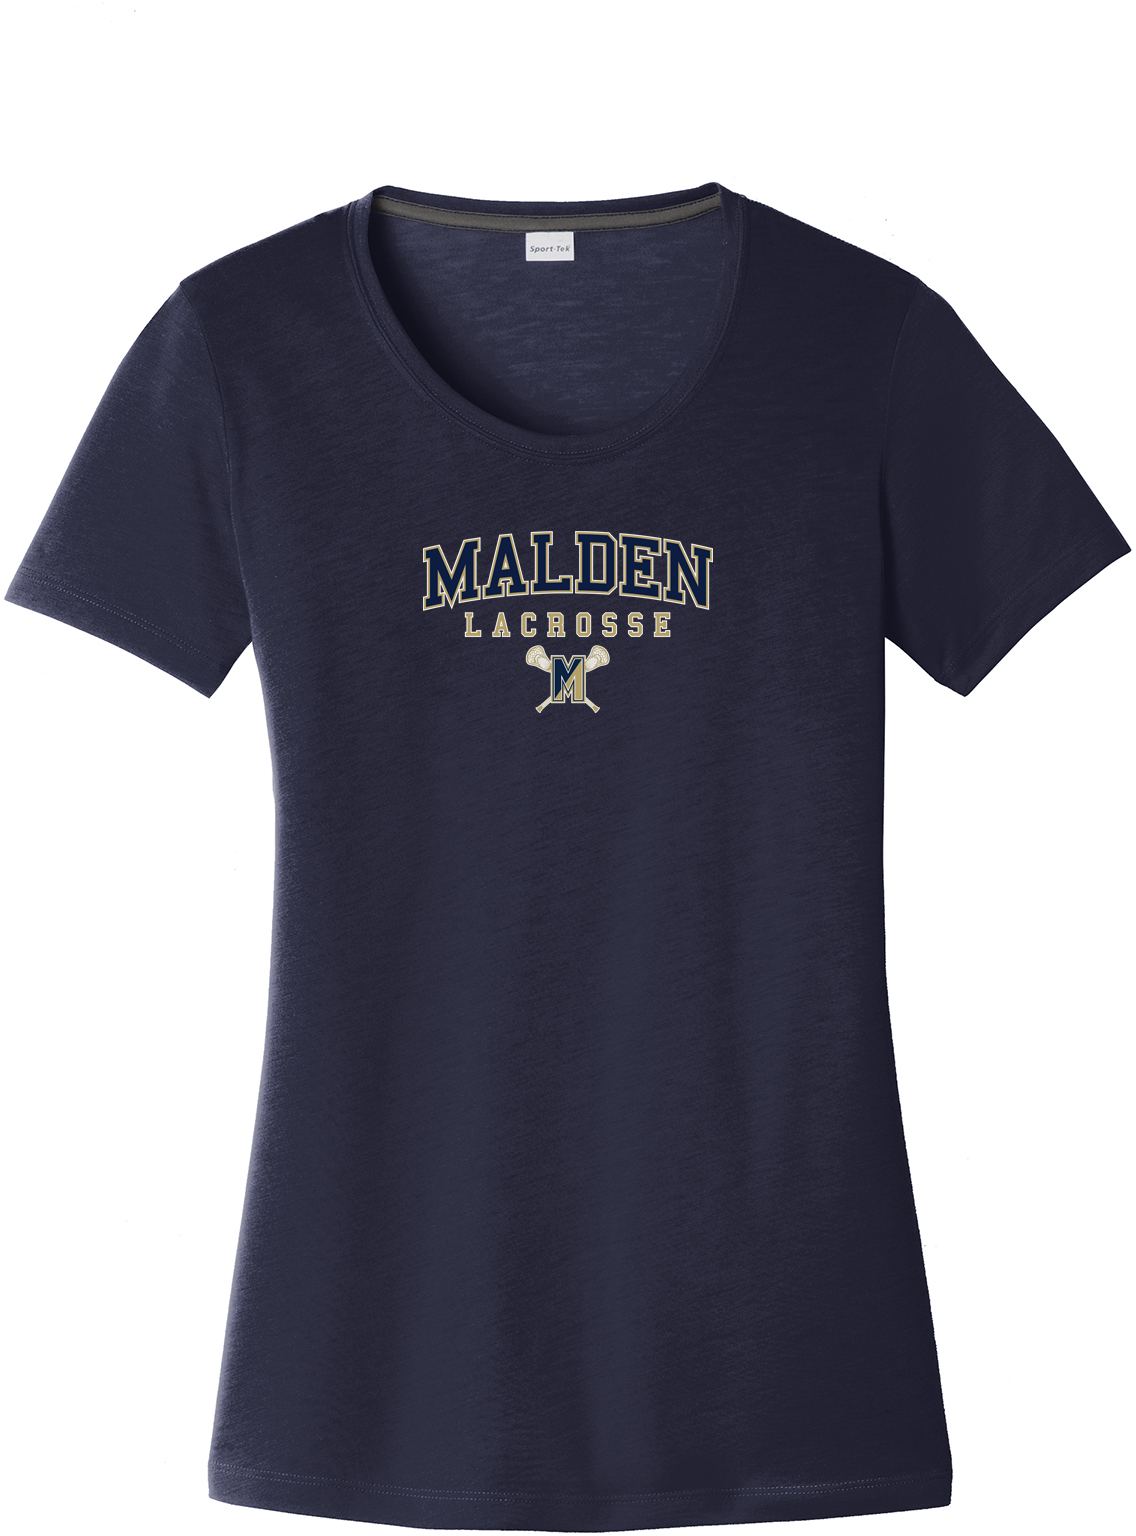 Malden Lacrosse Women's CottonTouch Performance T-Shirt